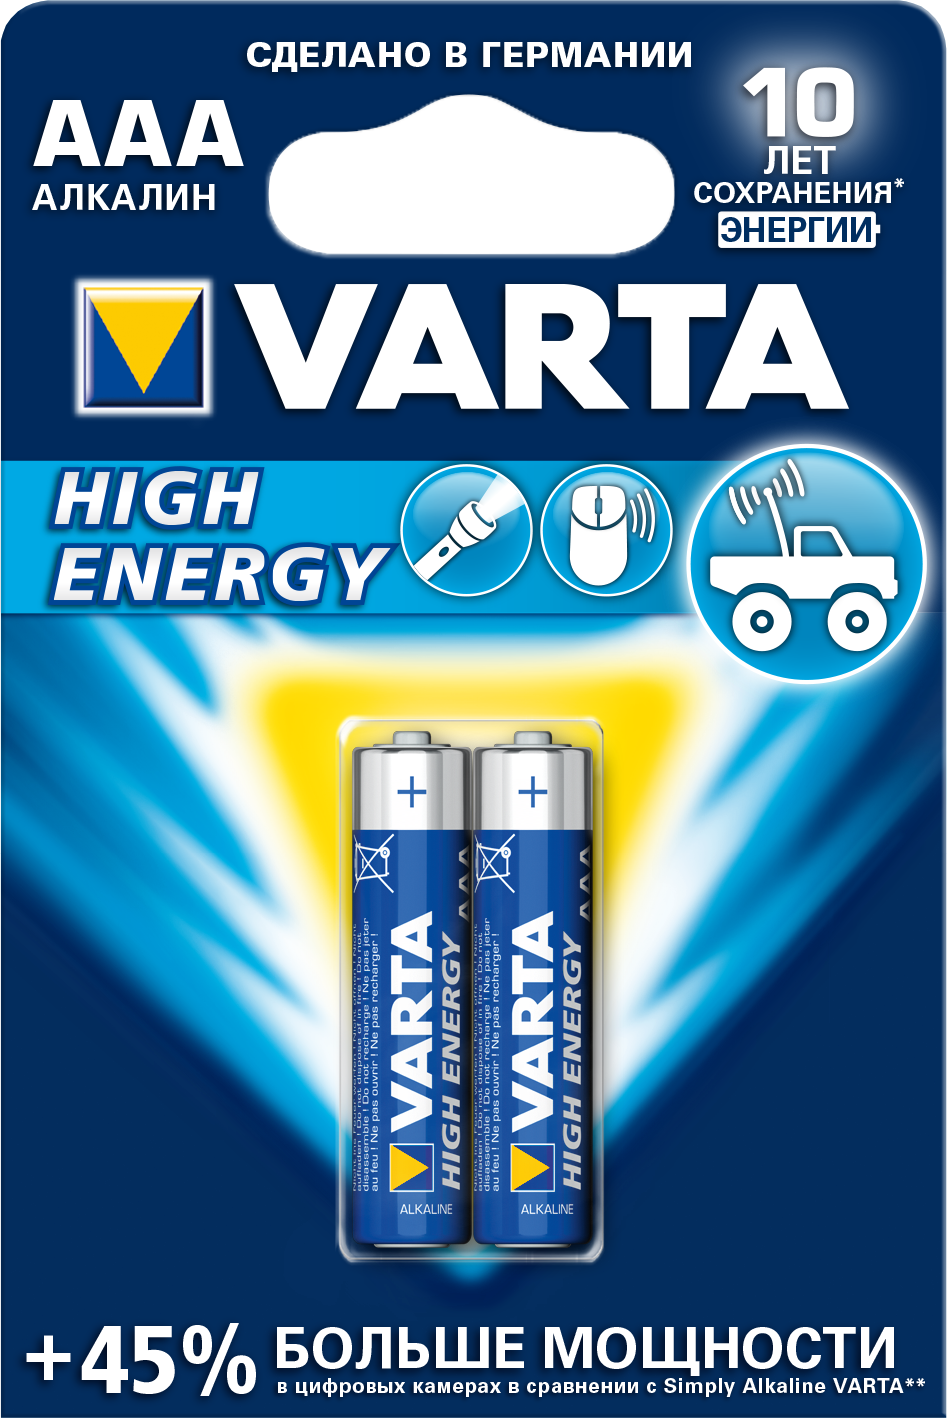 Батарейка Varta HIGH ENERGY AAA БЛ. 2,KISPIS батарейка varta energy 9v bl1